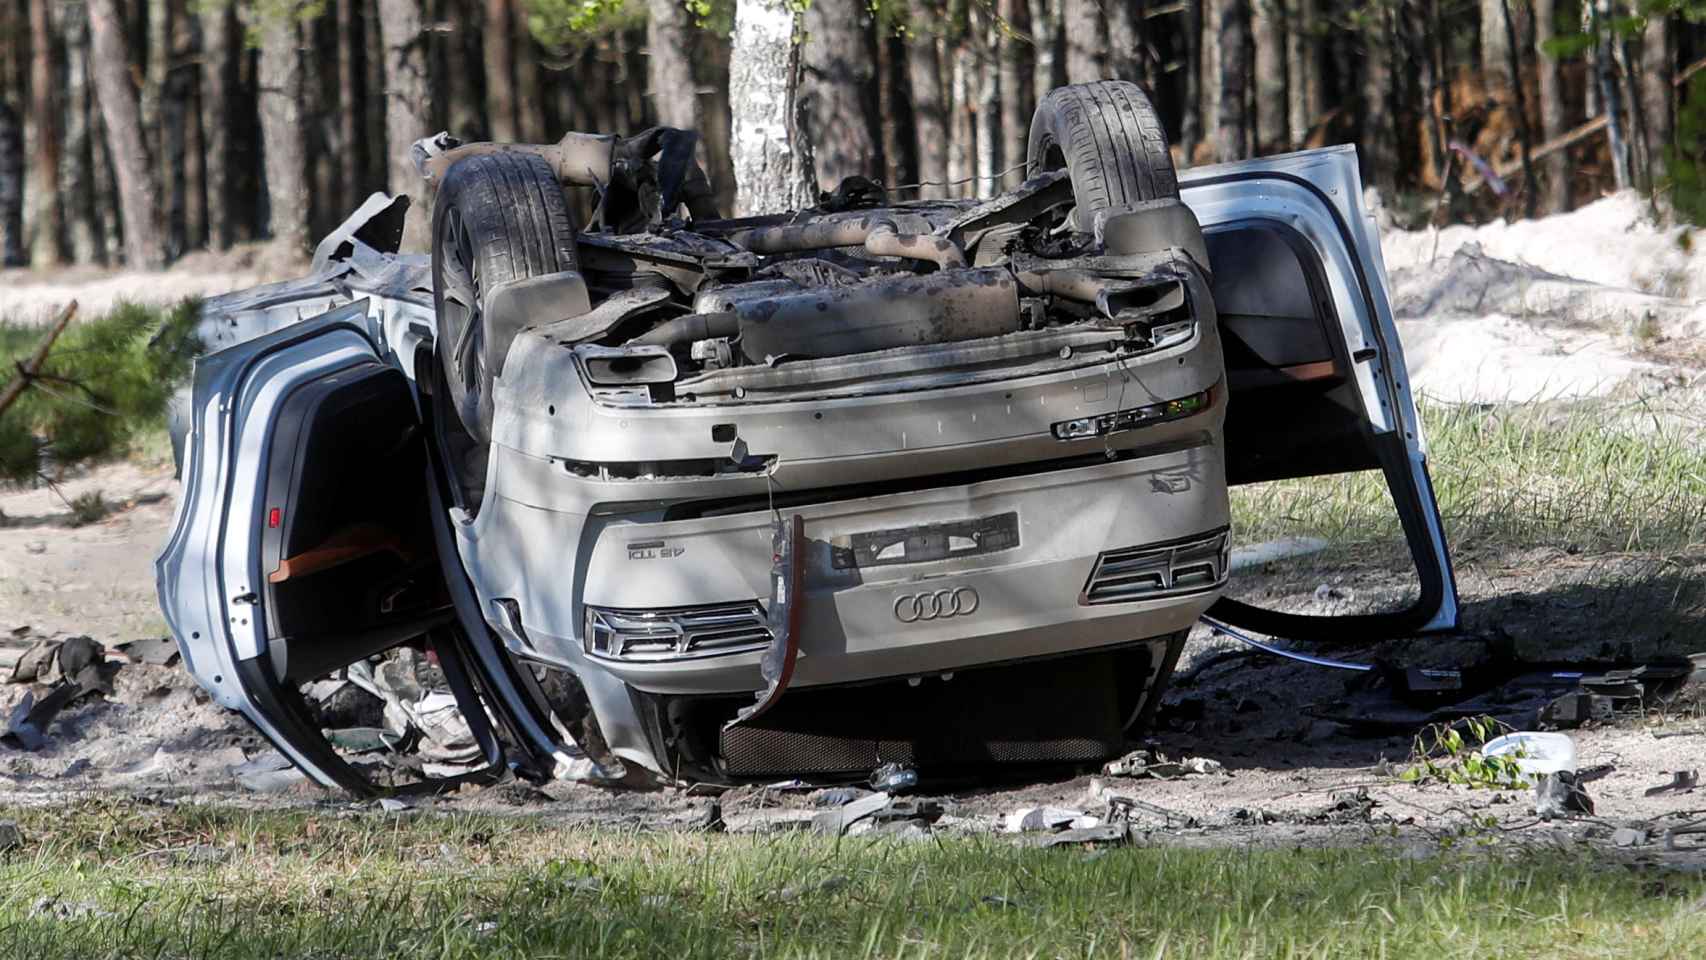 Audi Q7 blanco, en el que viajaba Prilepin, momentos después de la explosión.